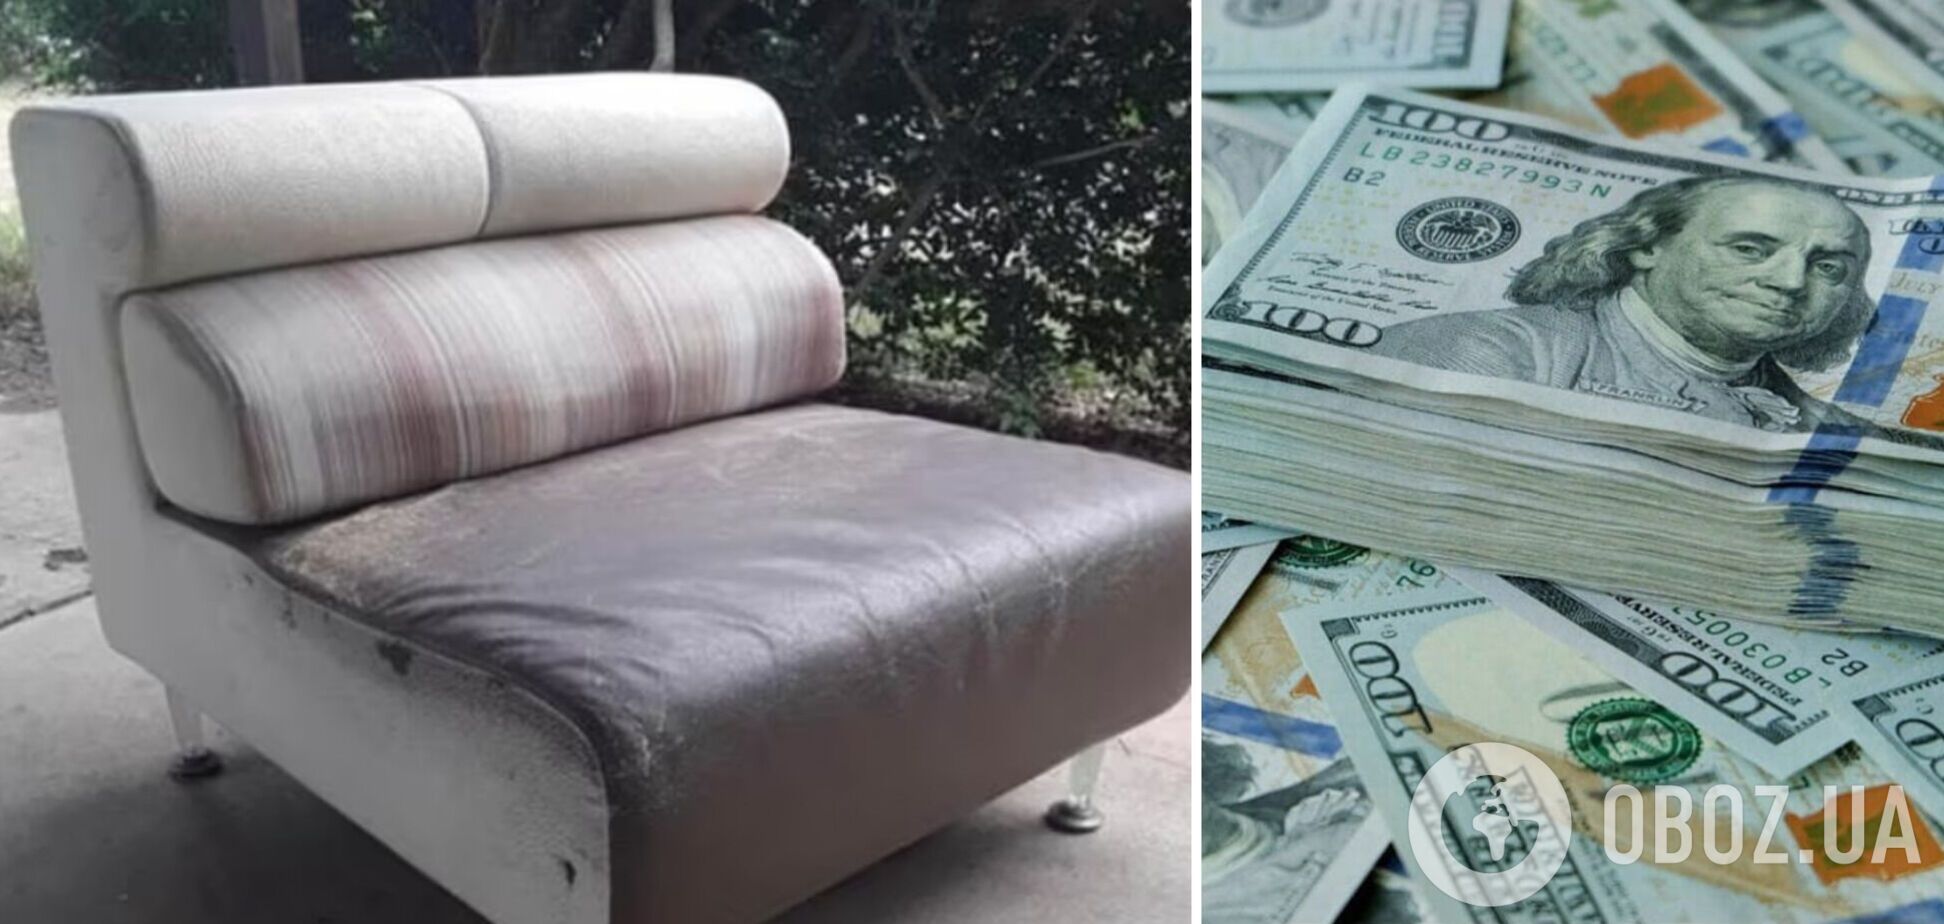 Мужчина спрятал большие деньги в диван, забыл и отдал его